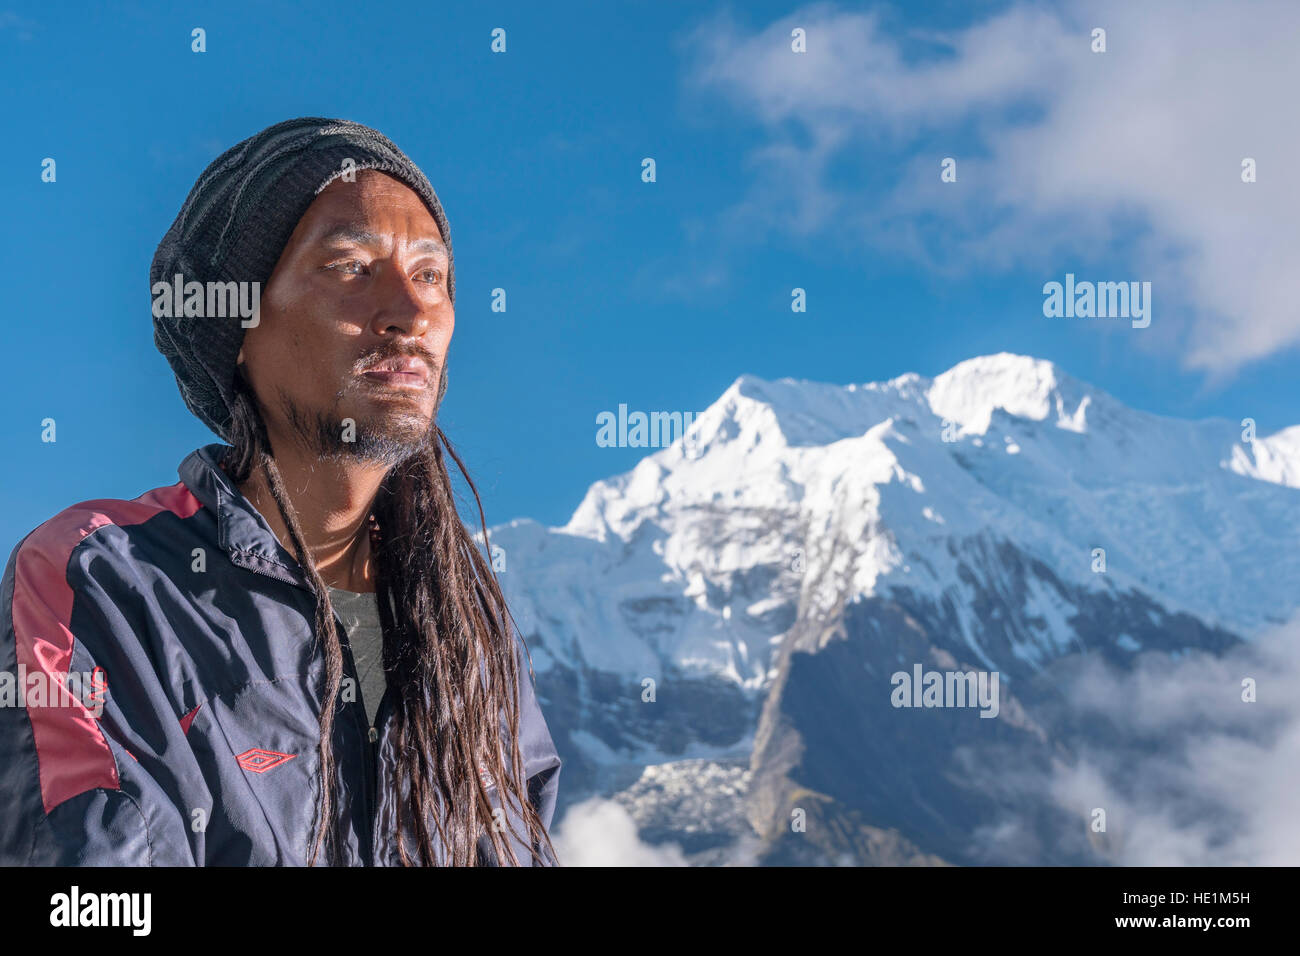 Un portrait d'un jeune homme avec des dreadlocks, la montagne Annapurna 2 dans la distance Banque D'Images